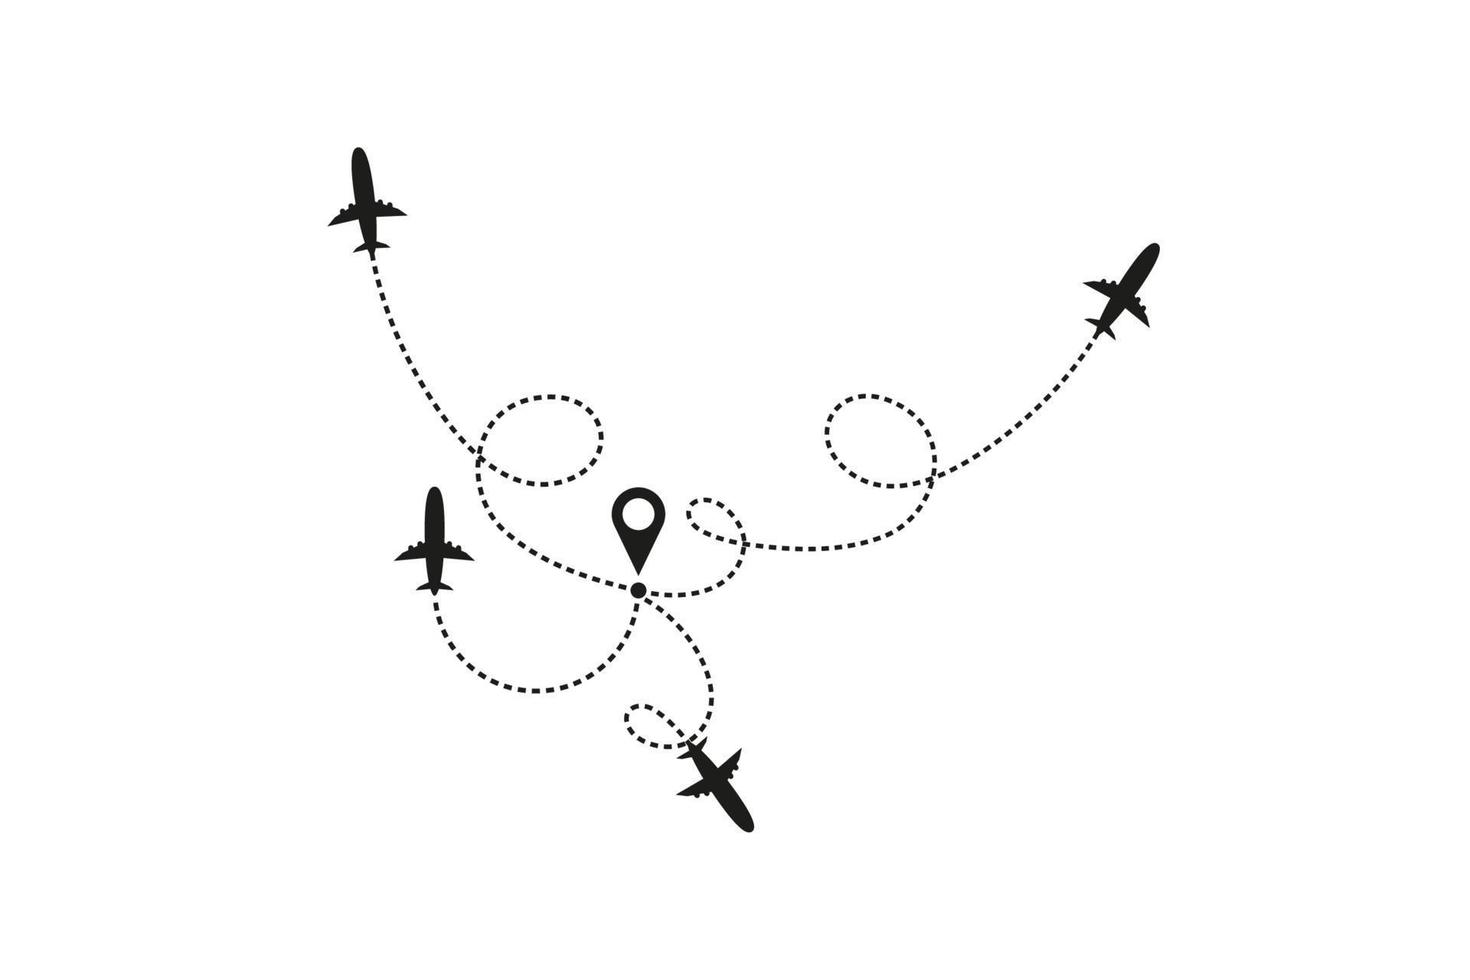 Tourismus- und Reisekonzept. Flugzeuglinienpfad auf weißem Hintergrund. Vektorsymbol der Flugroute des Flugzeugs mit Strichlinienspur, Startpunkt und Übertragungspunkt. Vektorillustration vektor